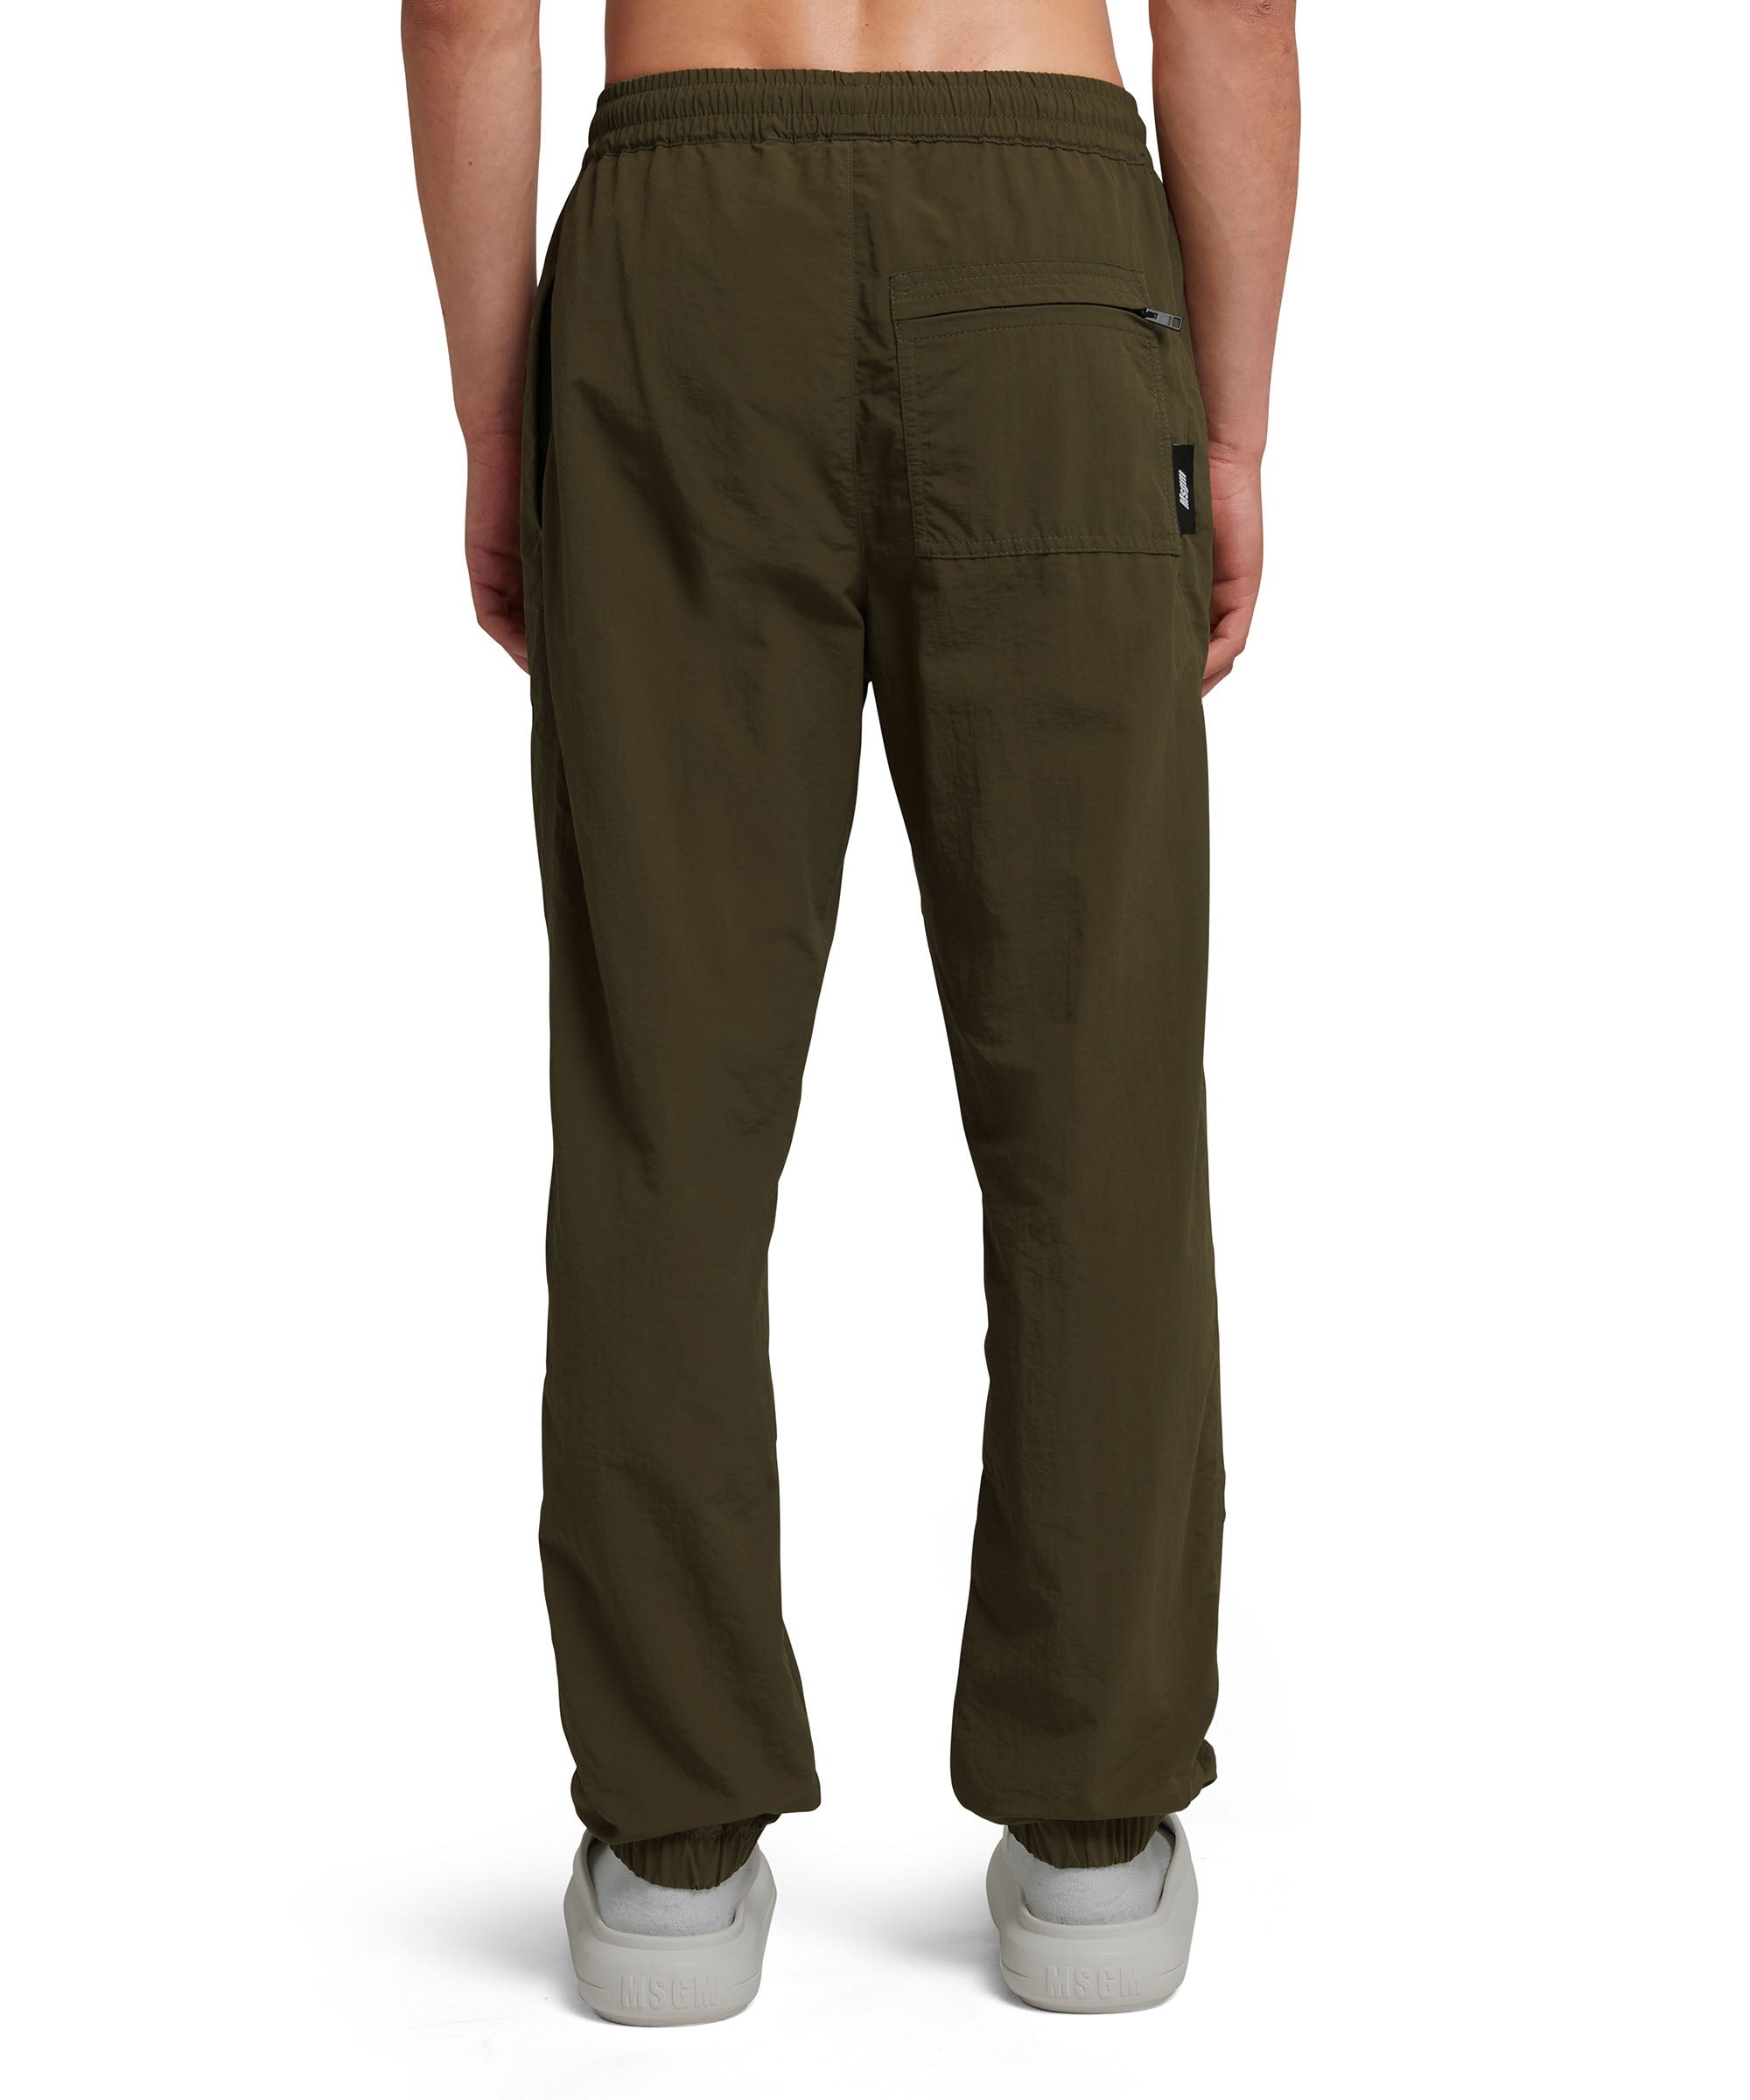 Nylon pants with elasticized waistband - 3